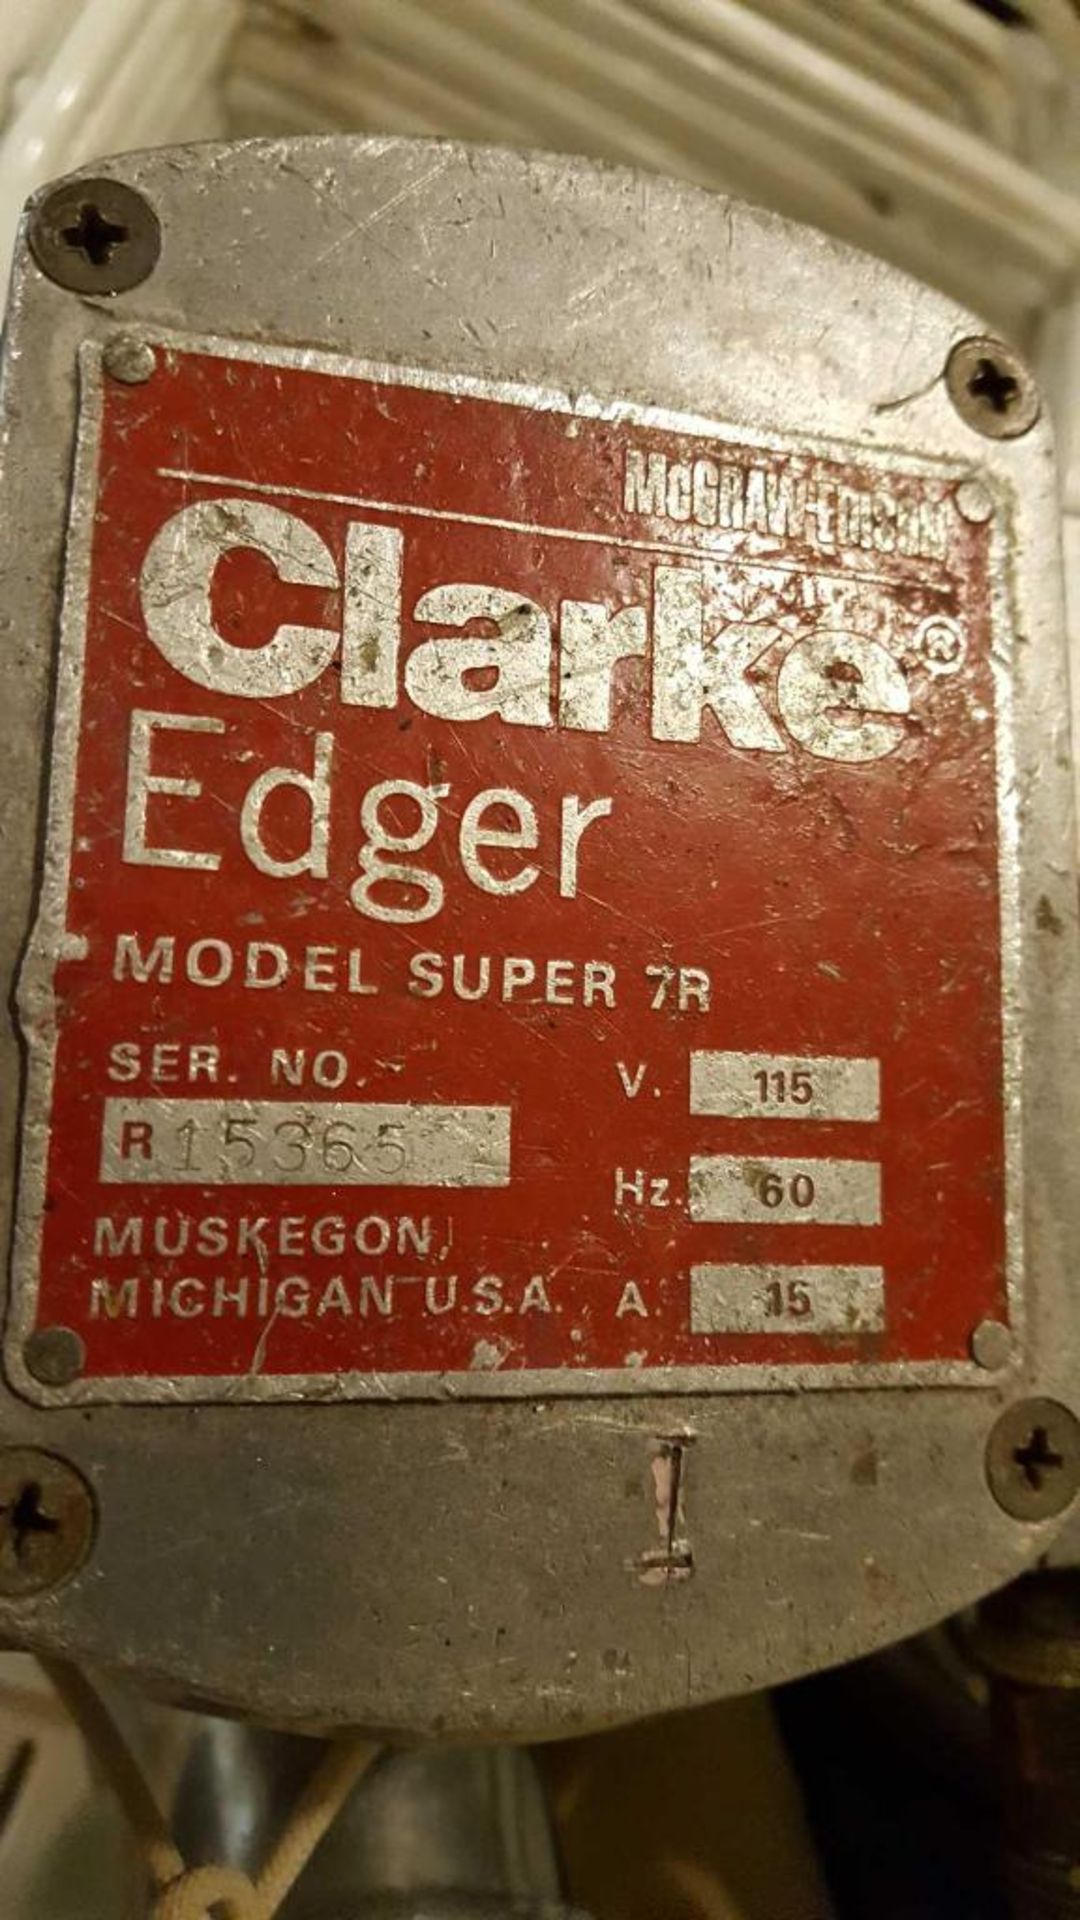 Clark edger floor sander, model number Super 7R, serial number 15365, one ph - Image 3 of 3